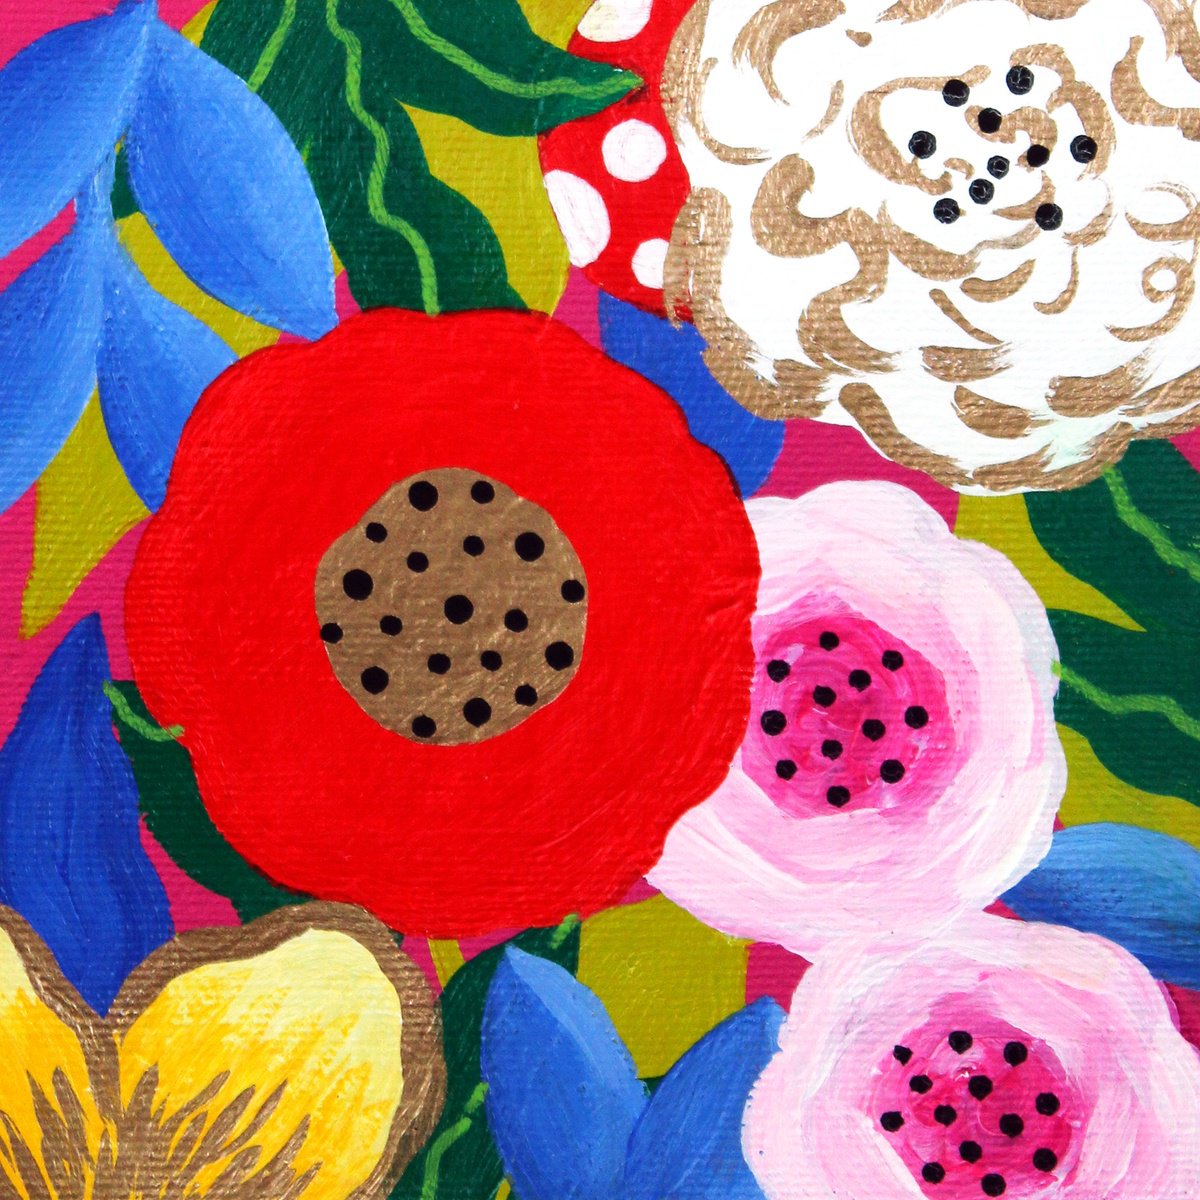 Floral Fantasia by Martina Boycheva